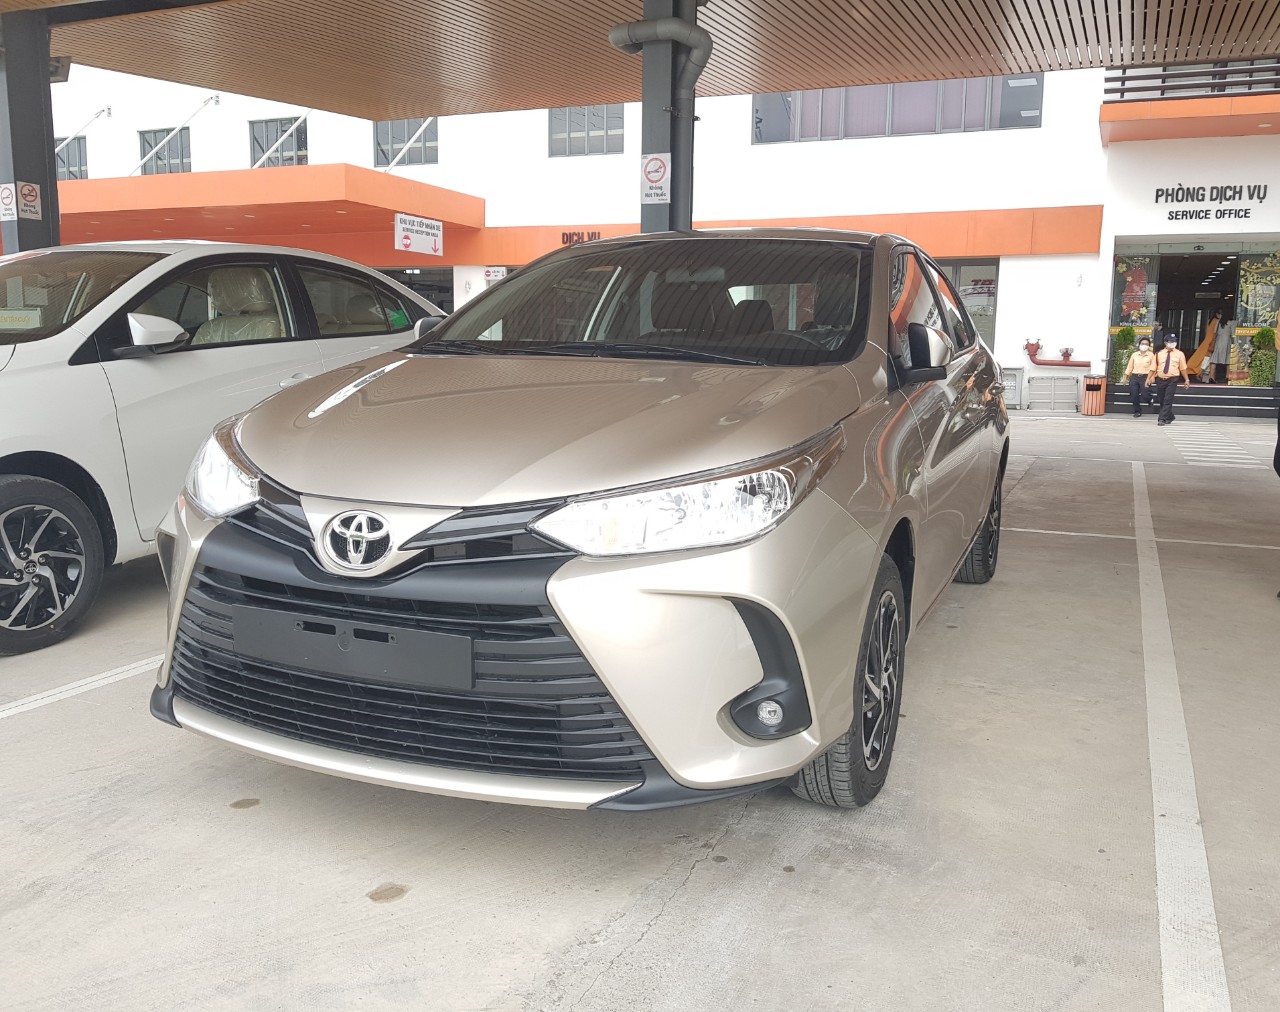 Toyota Vios 2021 số sàn giảm giá tiền mặt - Ưu đãi lãi suất trả góp chỉ 0.41%/tháng-1